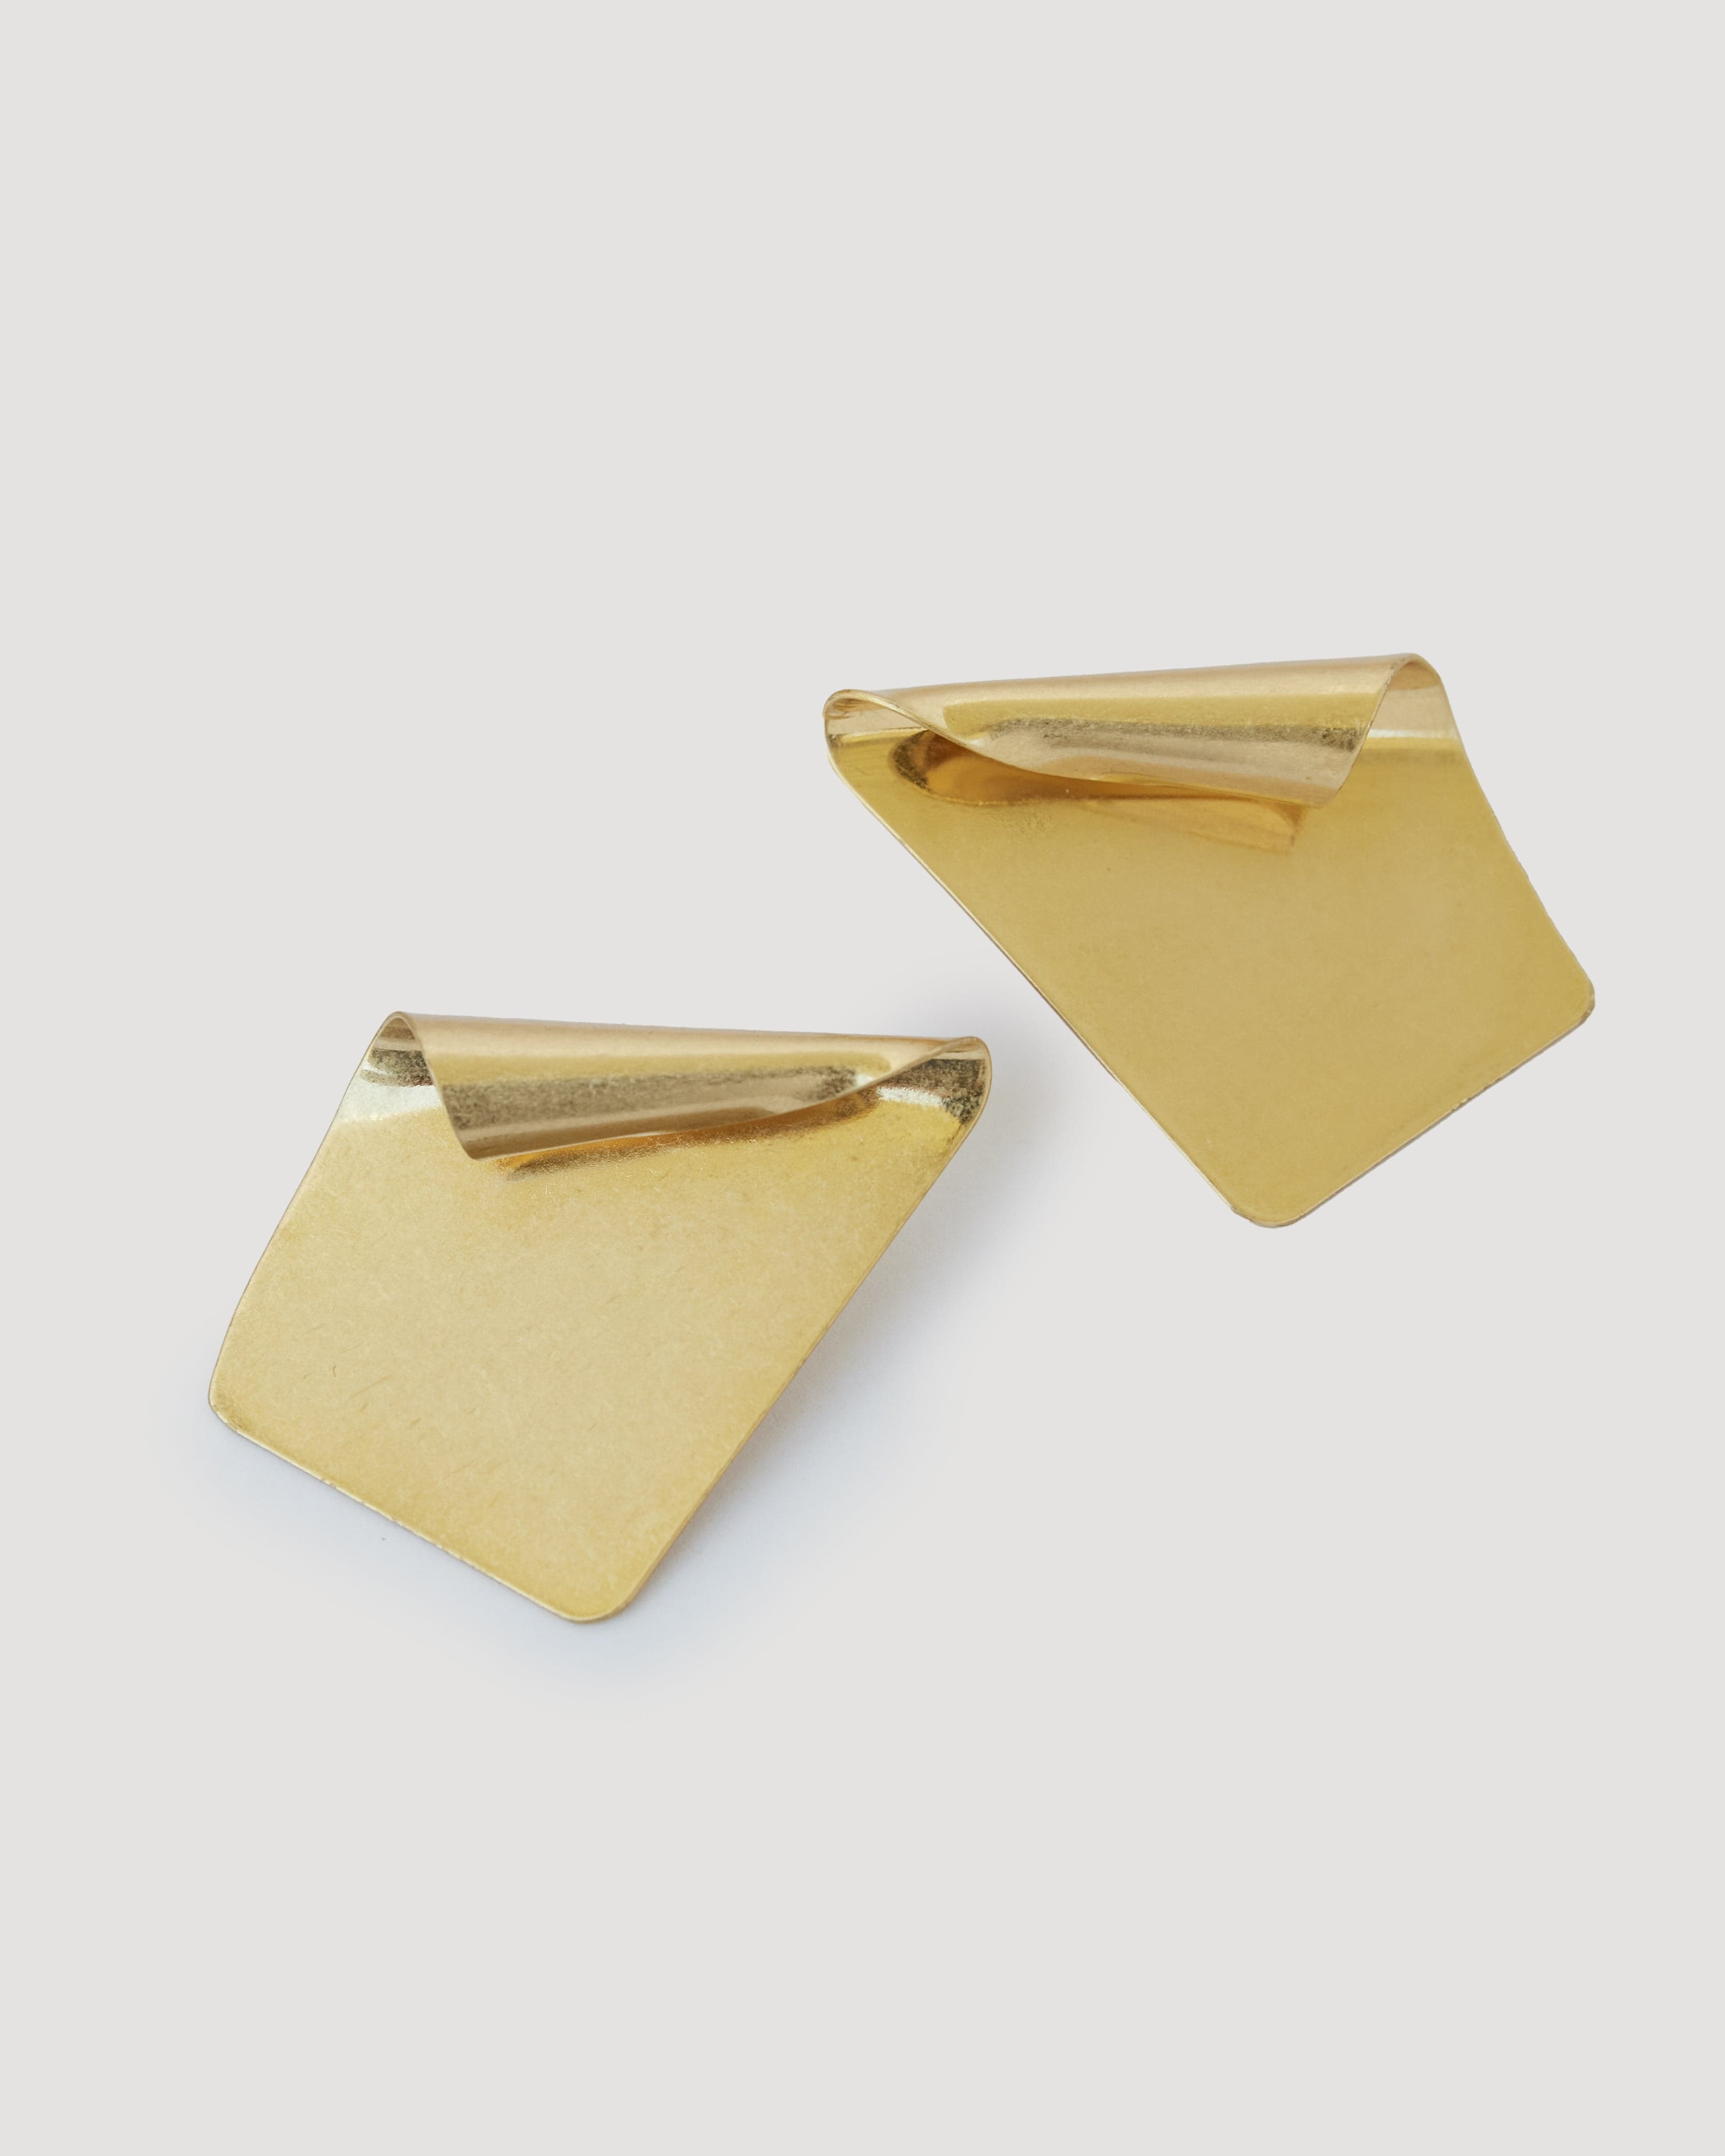 Gold earrings in shape of fan